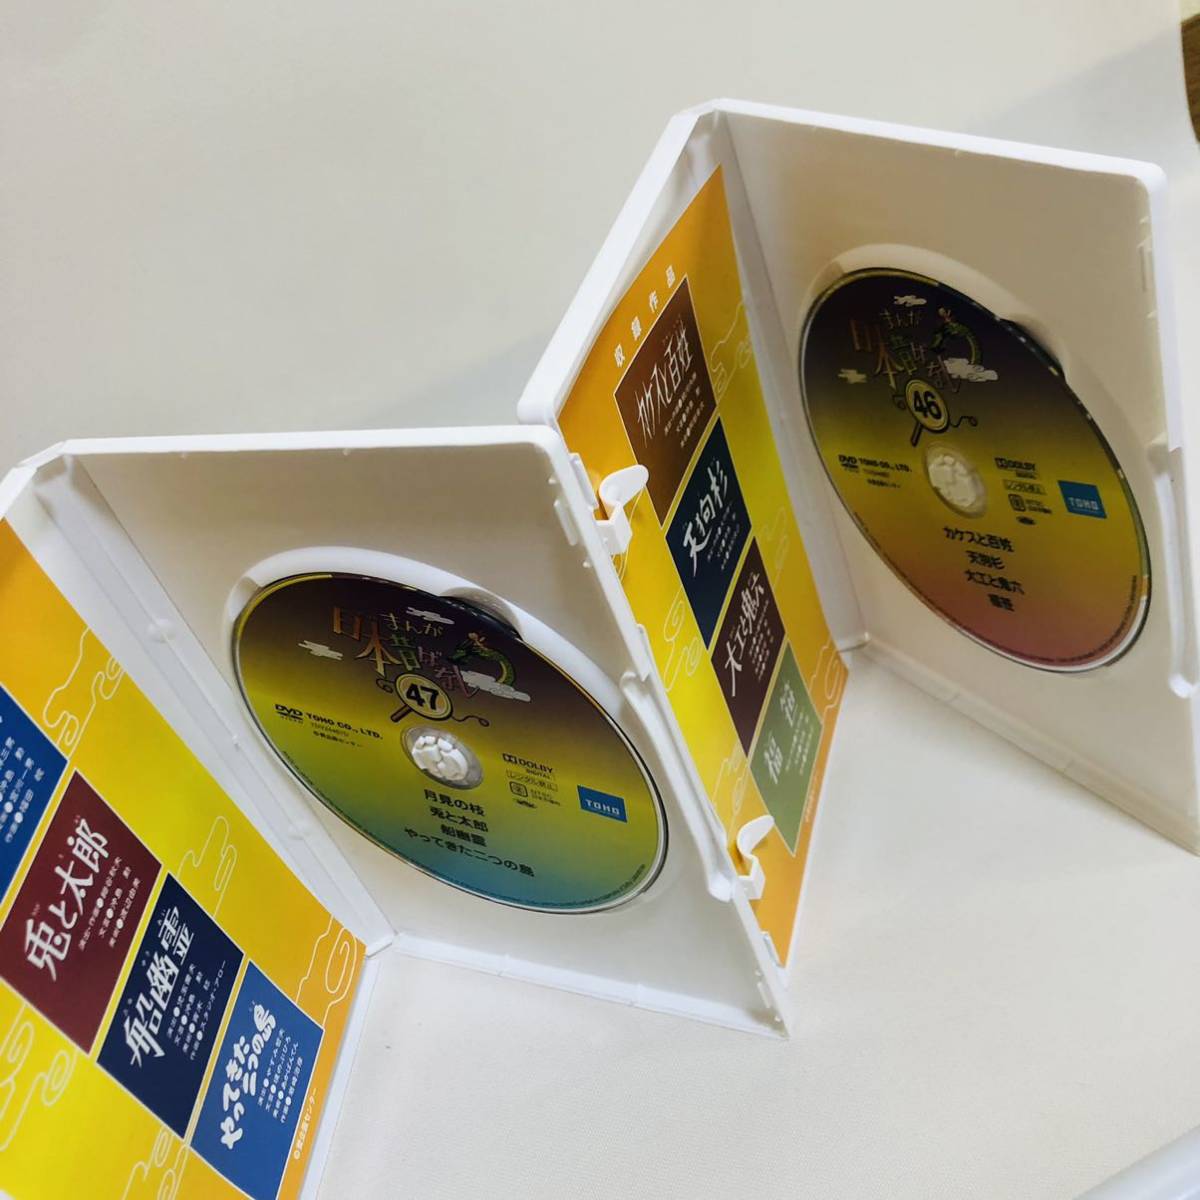  бесплатная доставка *... Япония прошлое . нет DVD-BOX no. 10 сборник Япония сказки 10 сборник 46 47 48 49 50 DVD Showa аниме Kids экспертиза 